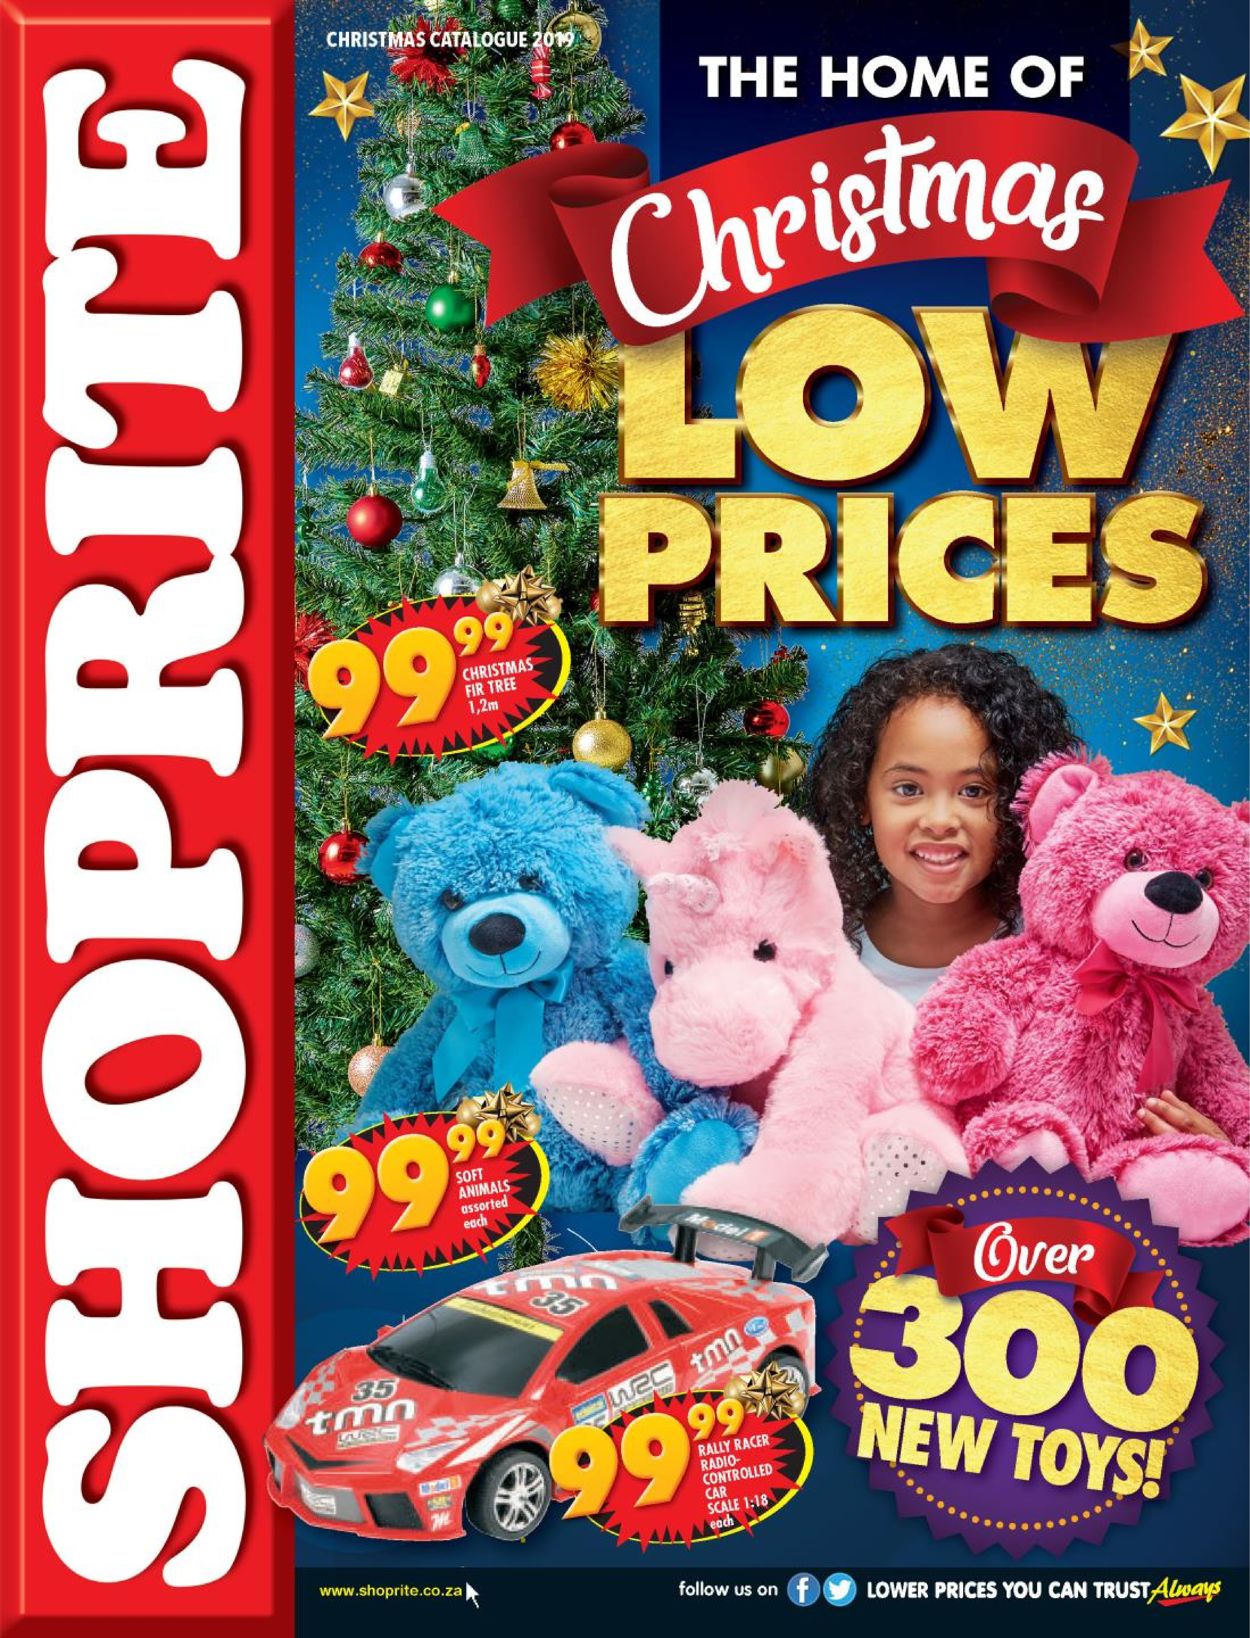 Shoprite Christmas Catalogue 2019 Catalogue 2019/11/18 2019/12/25